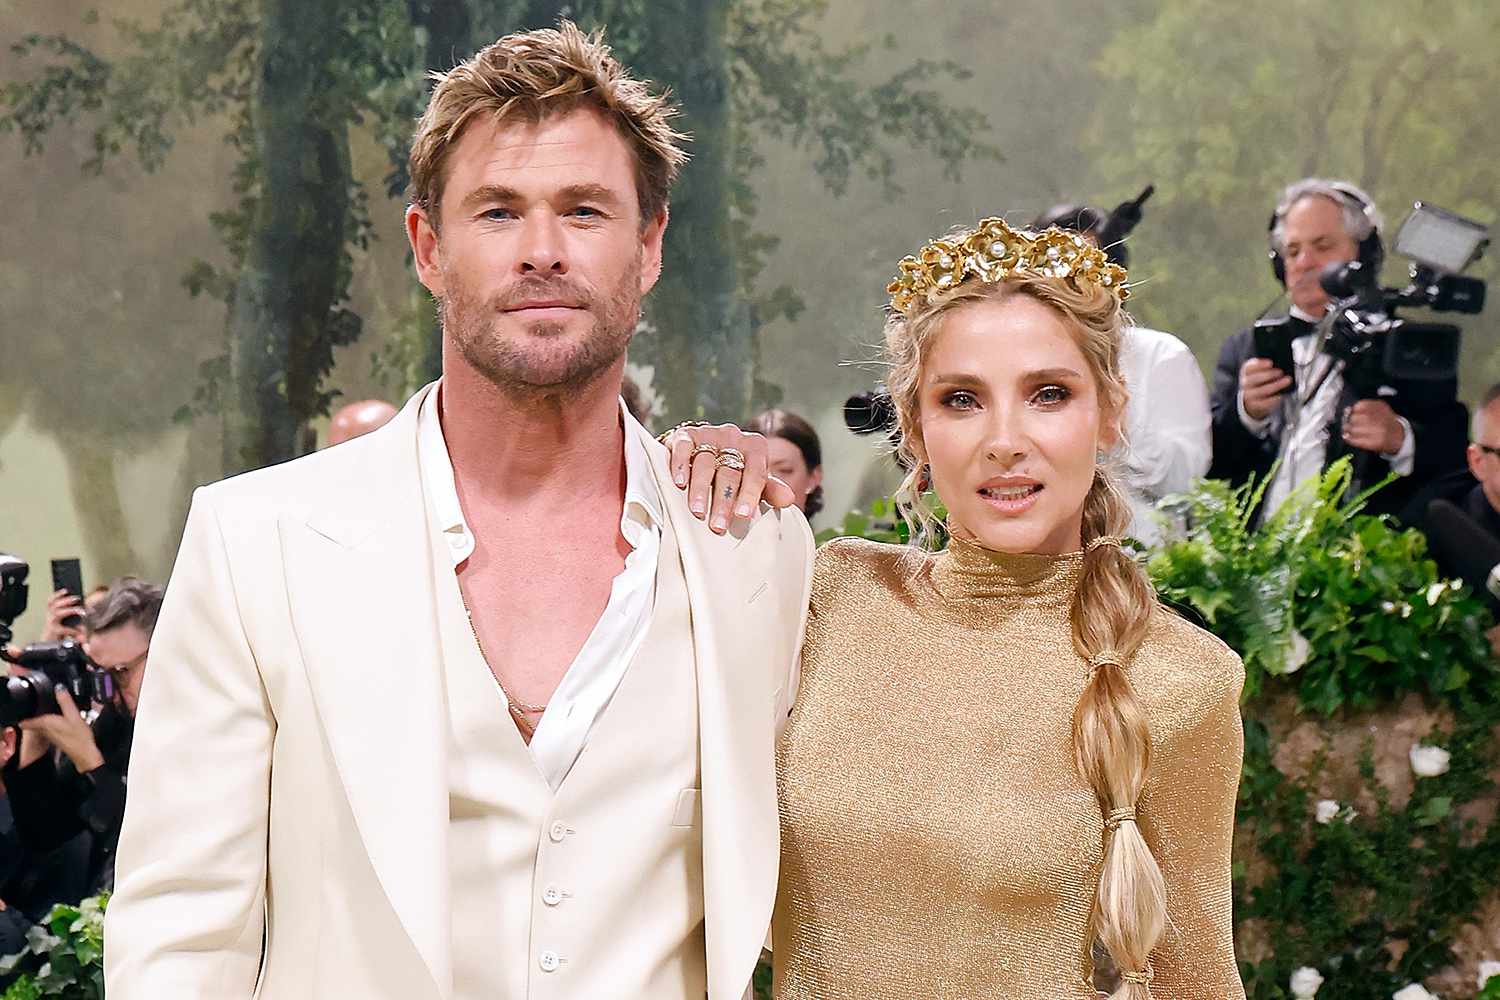 Chris Hemsworth Broke One Very Big Rule at the Met Gala